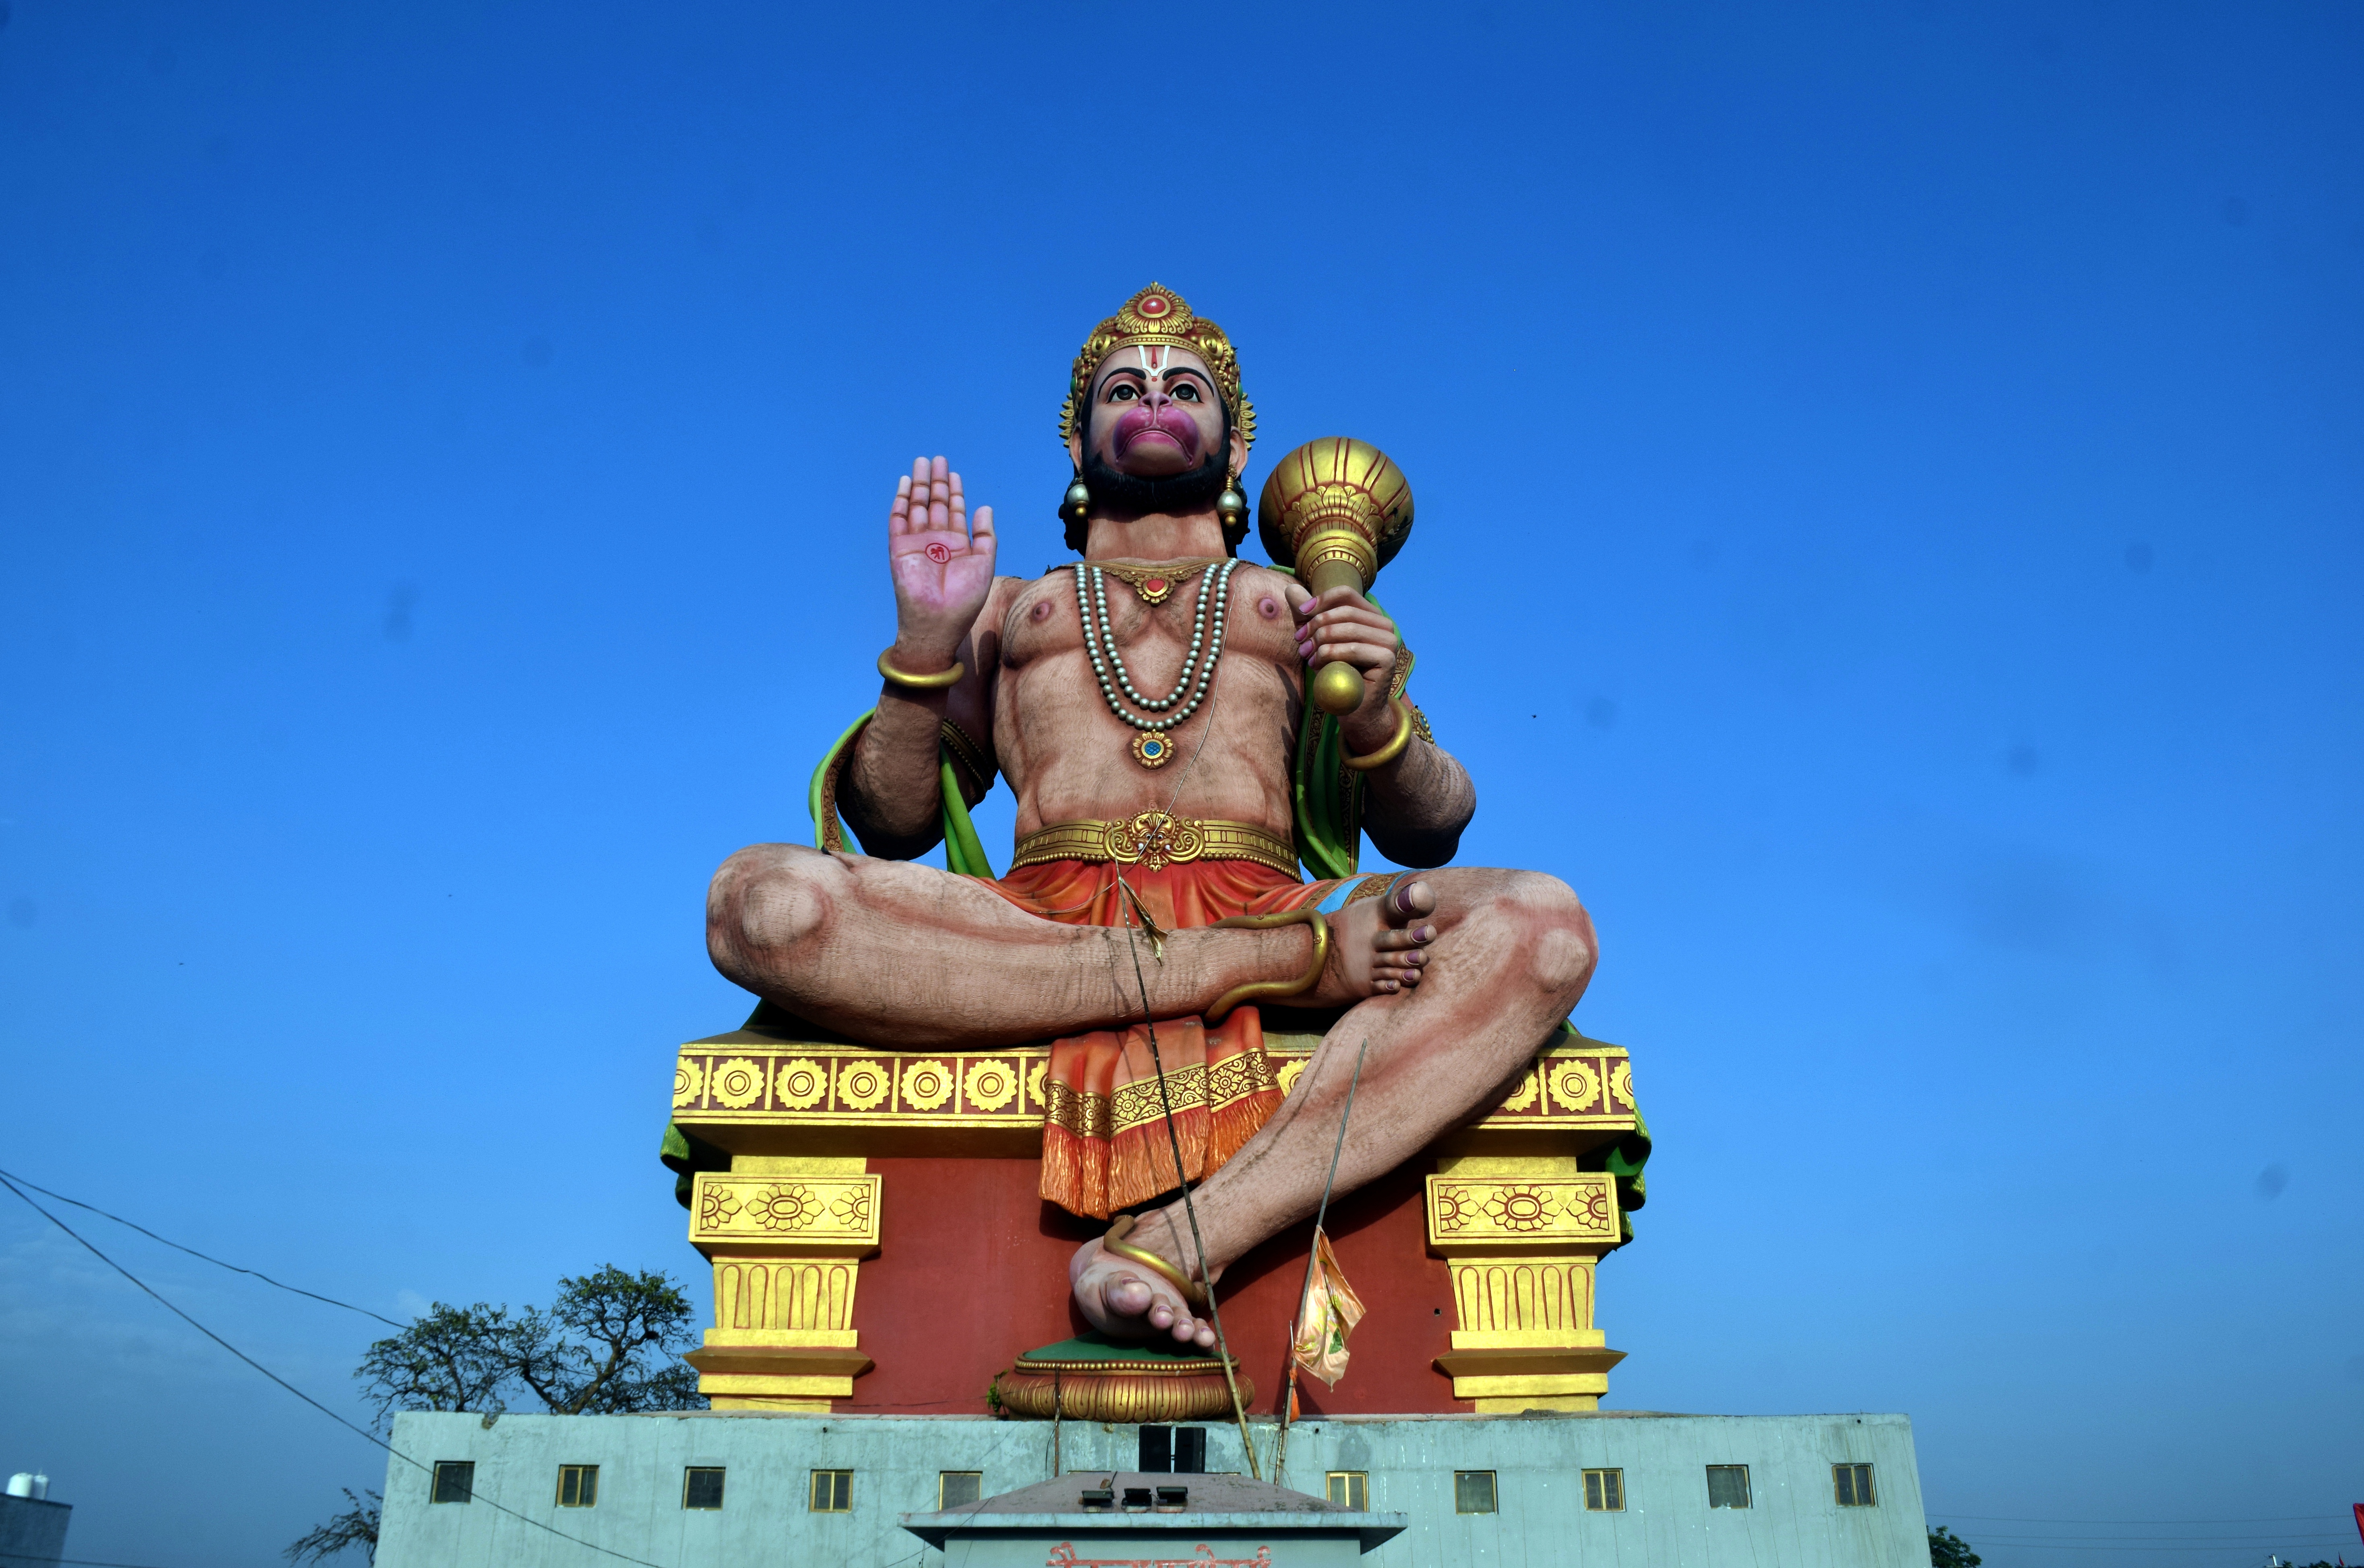 Hanumanbirthday इस शहर में हनुमान जी की विशेष कृपा, हजारों साल पुराने मंदिरों
में स्थापित हैं सिद्ध प्रतिमाएं